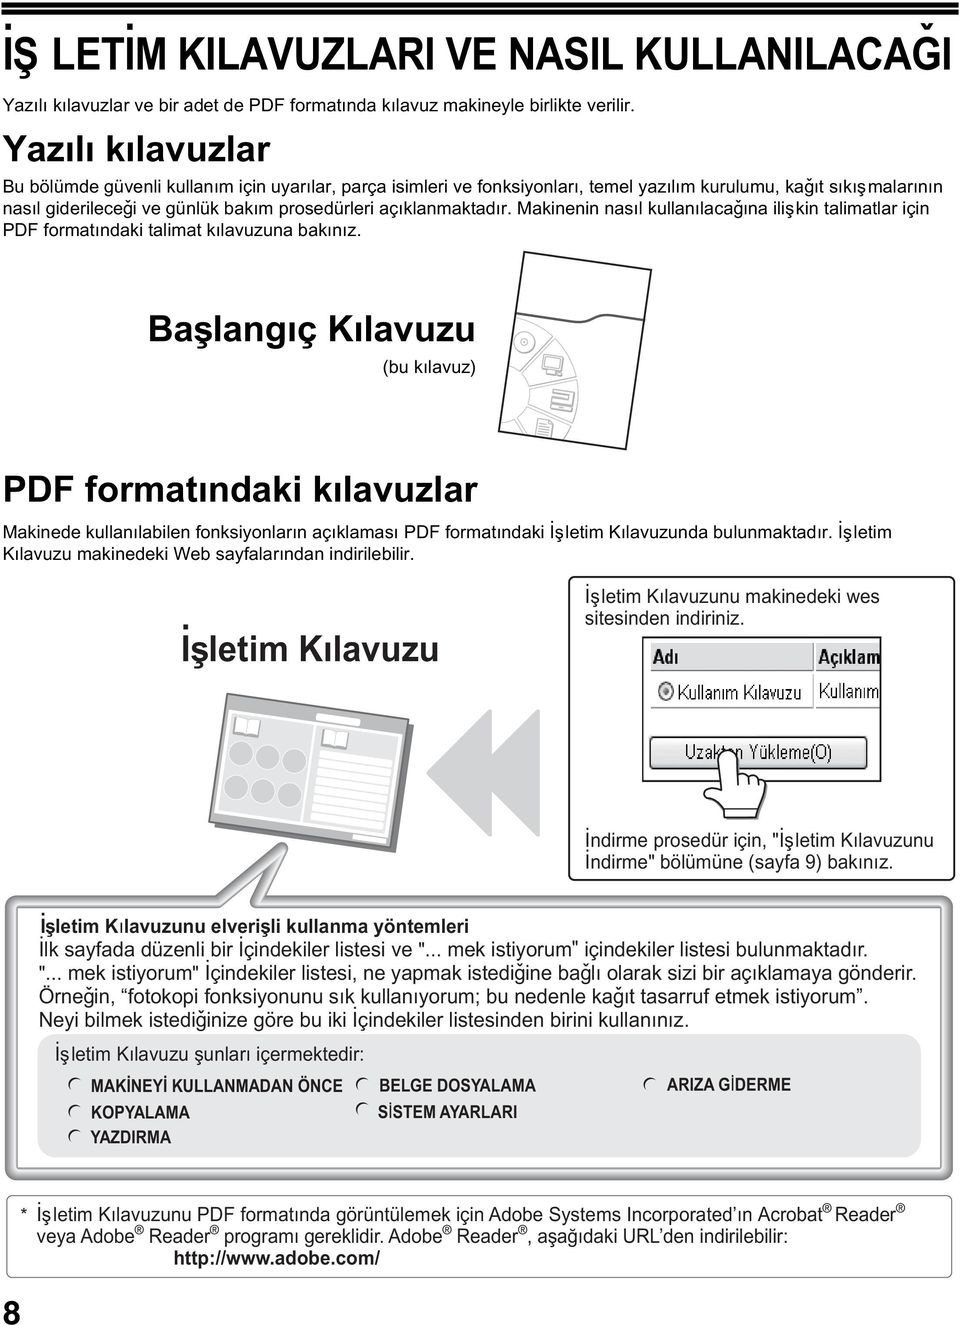 açýklanmaktadýr. Makinenin nasýl kullanýlacaðýna iliþkin talimatlar için PDF formatýndaki talimat kýlavuzuna bakýnýz.